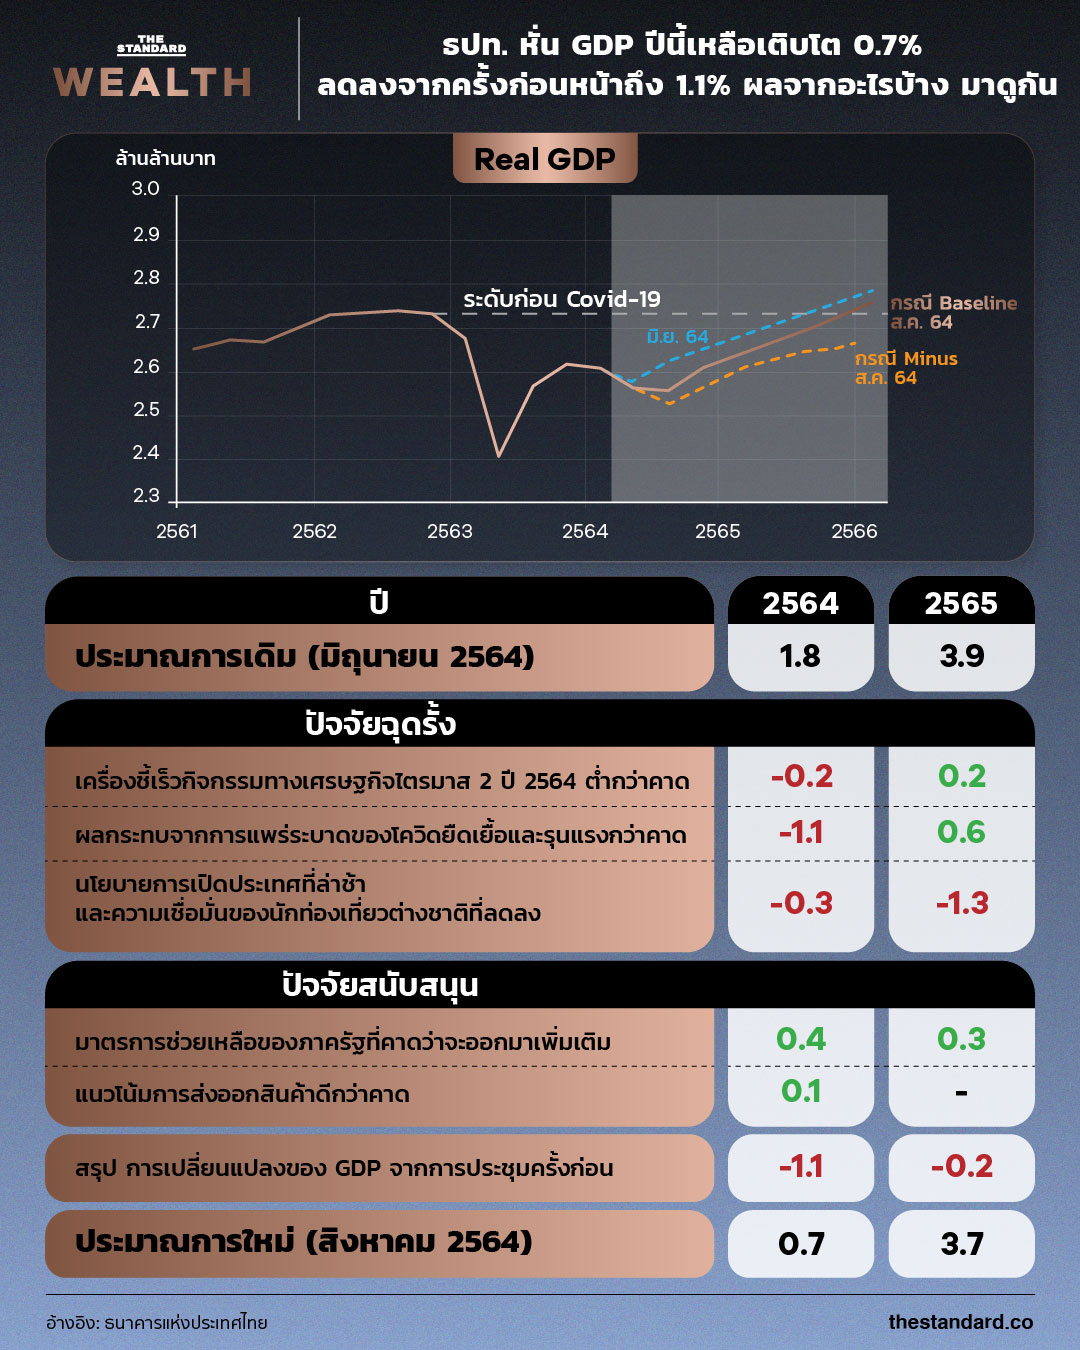 Thai GDP